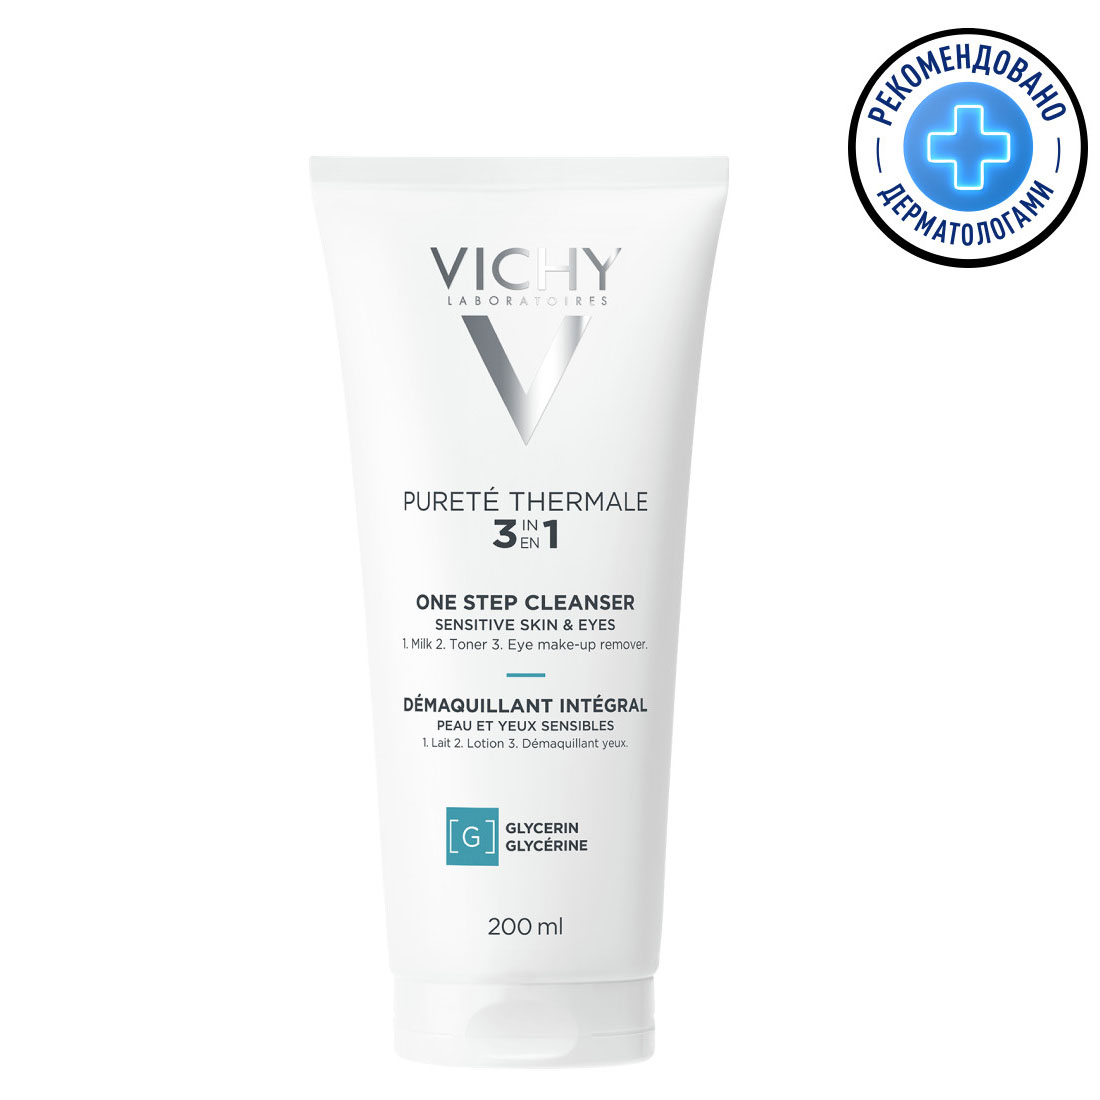 Vichy Очищающее средство универсальное для чувствительной кожи лица и вокруг глаз, 200 мл (Vichy, Purete Thermal)